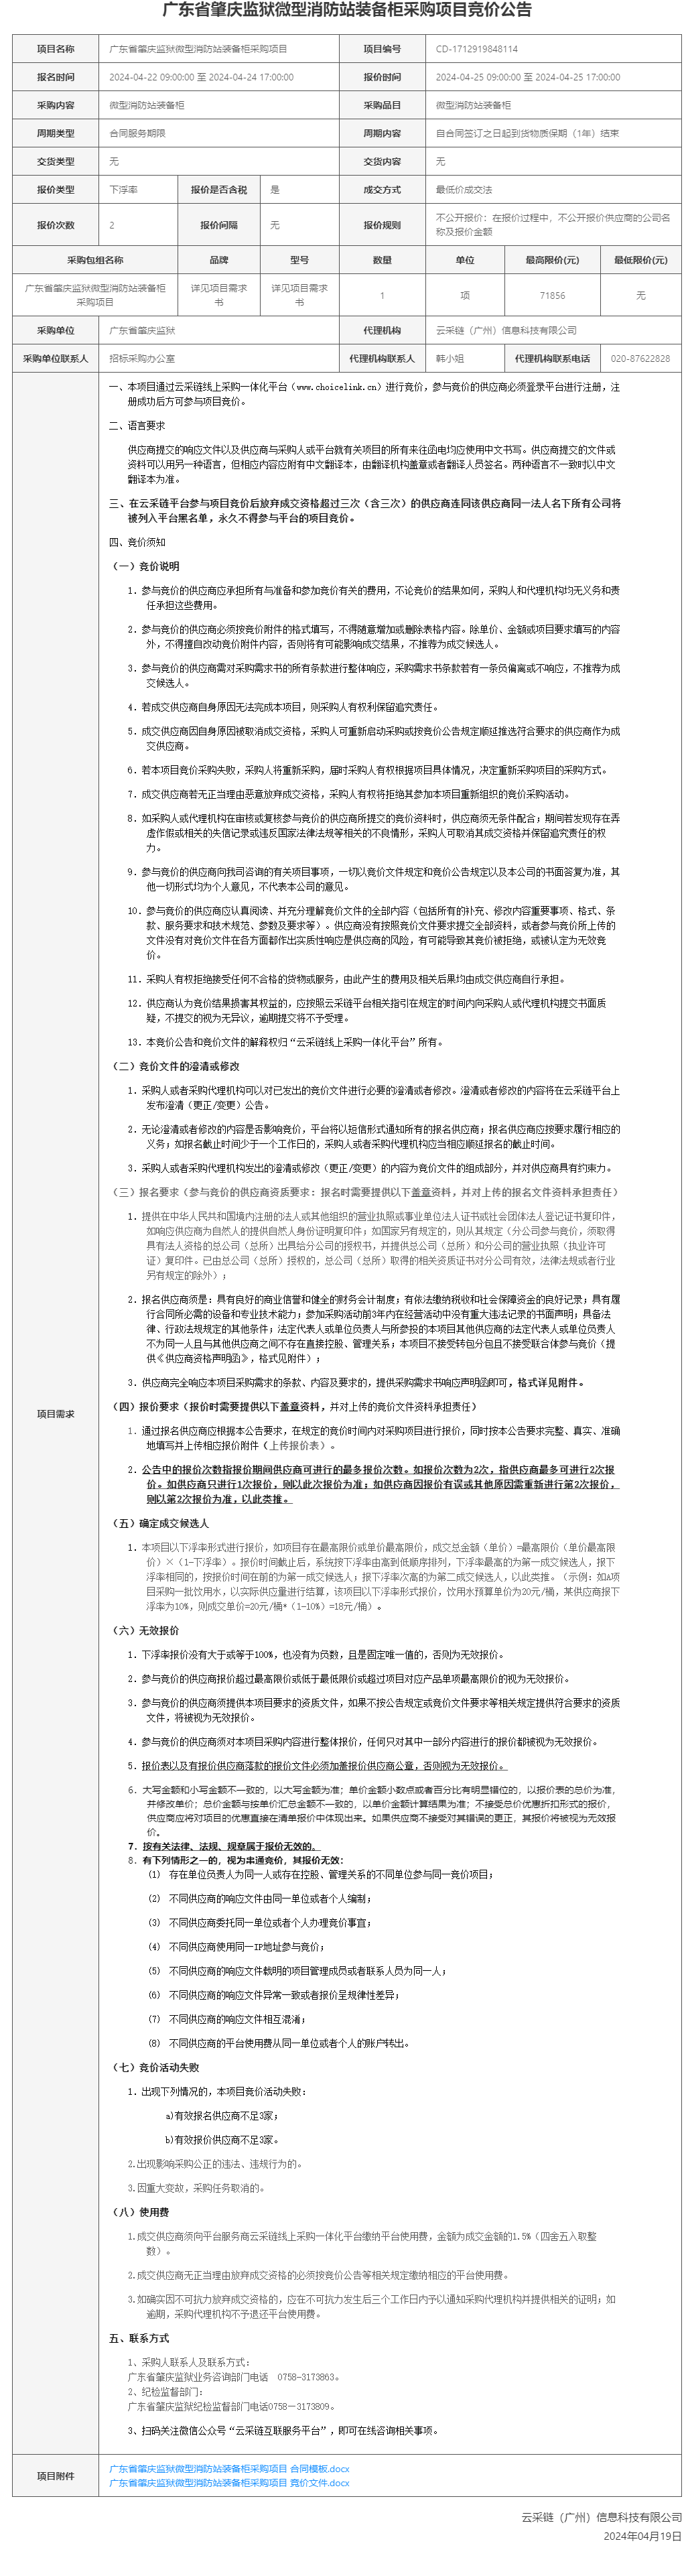 广东省肇庆监狱微型消防站装备柜采购项目竞价公告.png